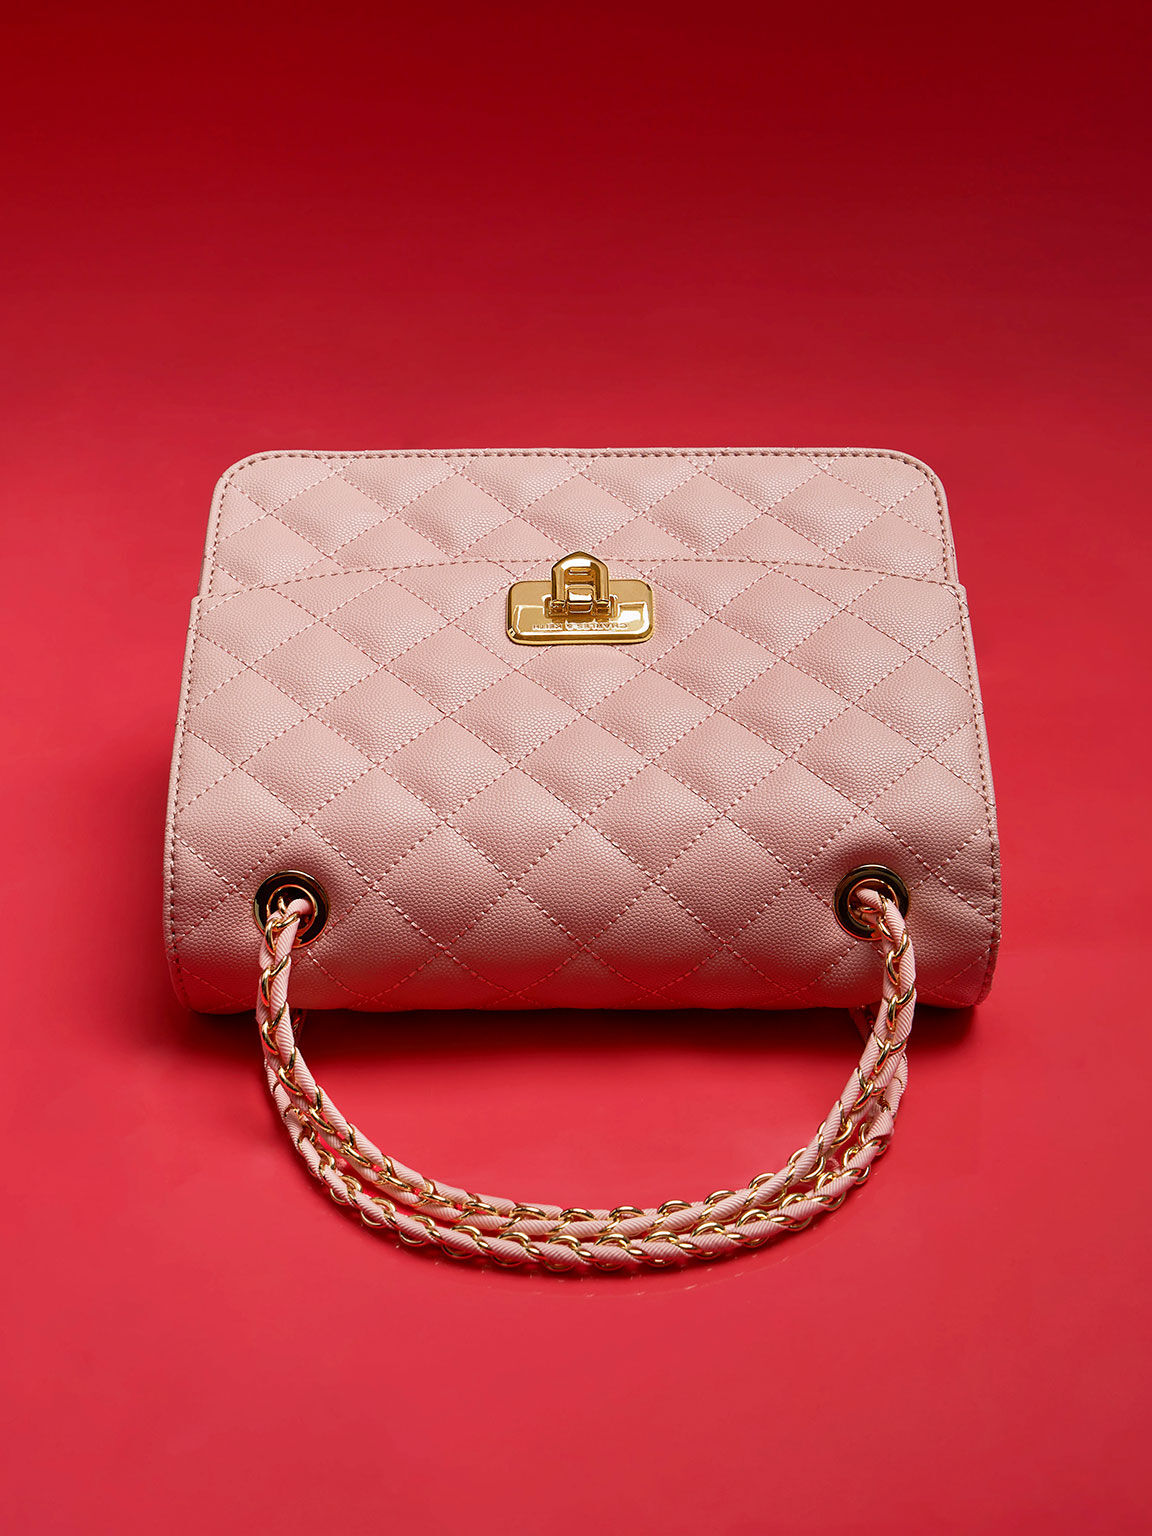 Y2K Barbiecore Pink Purse Saddle Satchel Shoulder Strap Handbag Embroidery  Studs | eBay